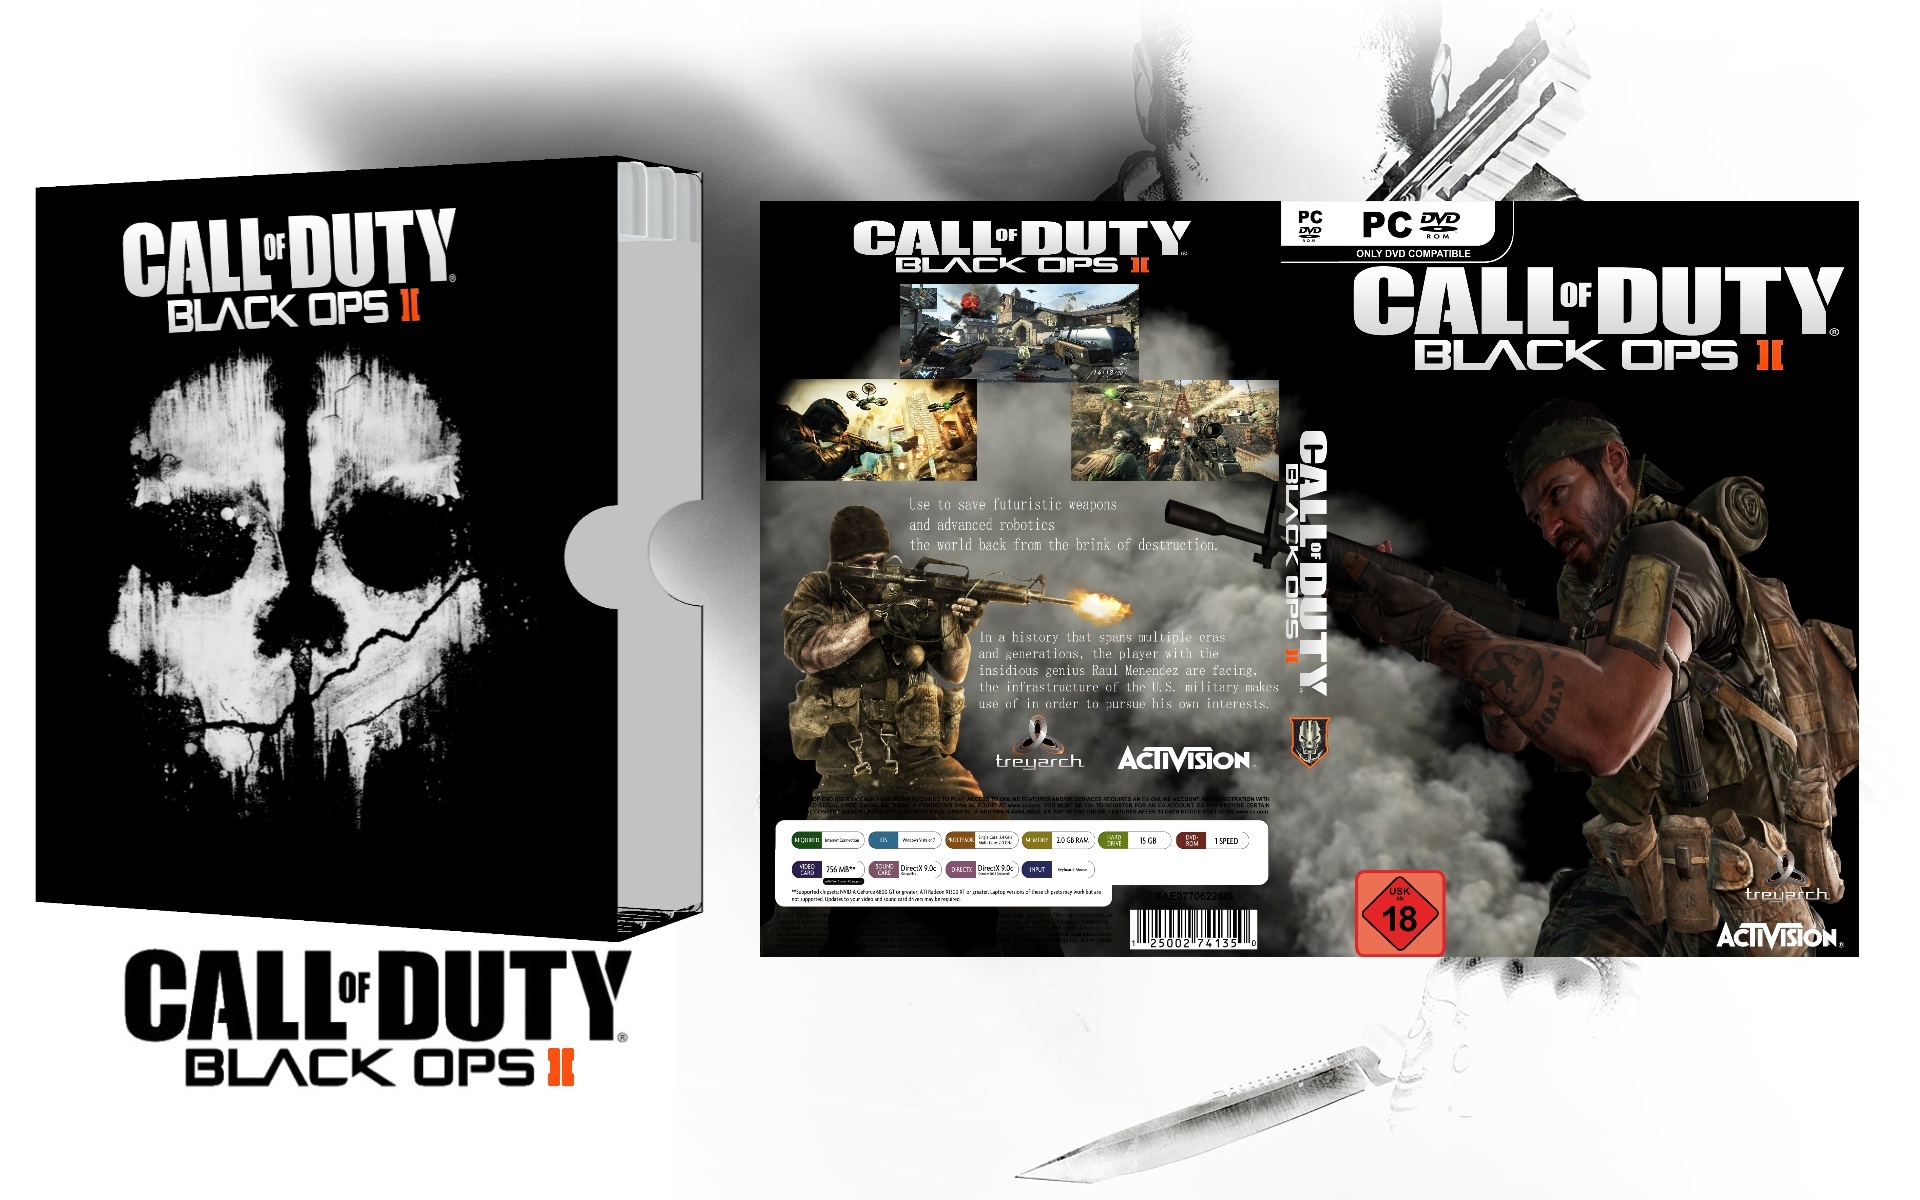 Call of Duty Black Ops II box cover